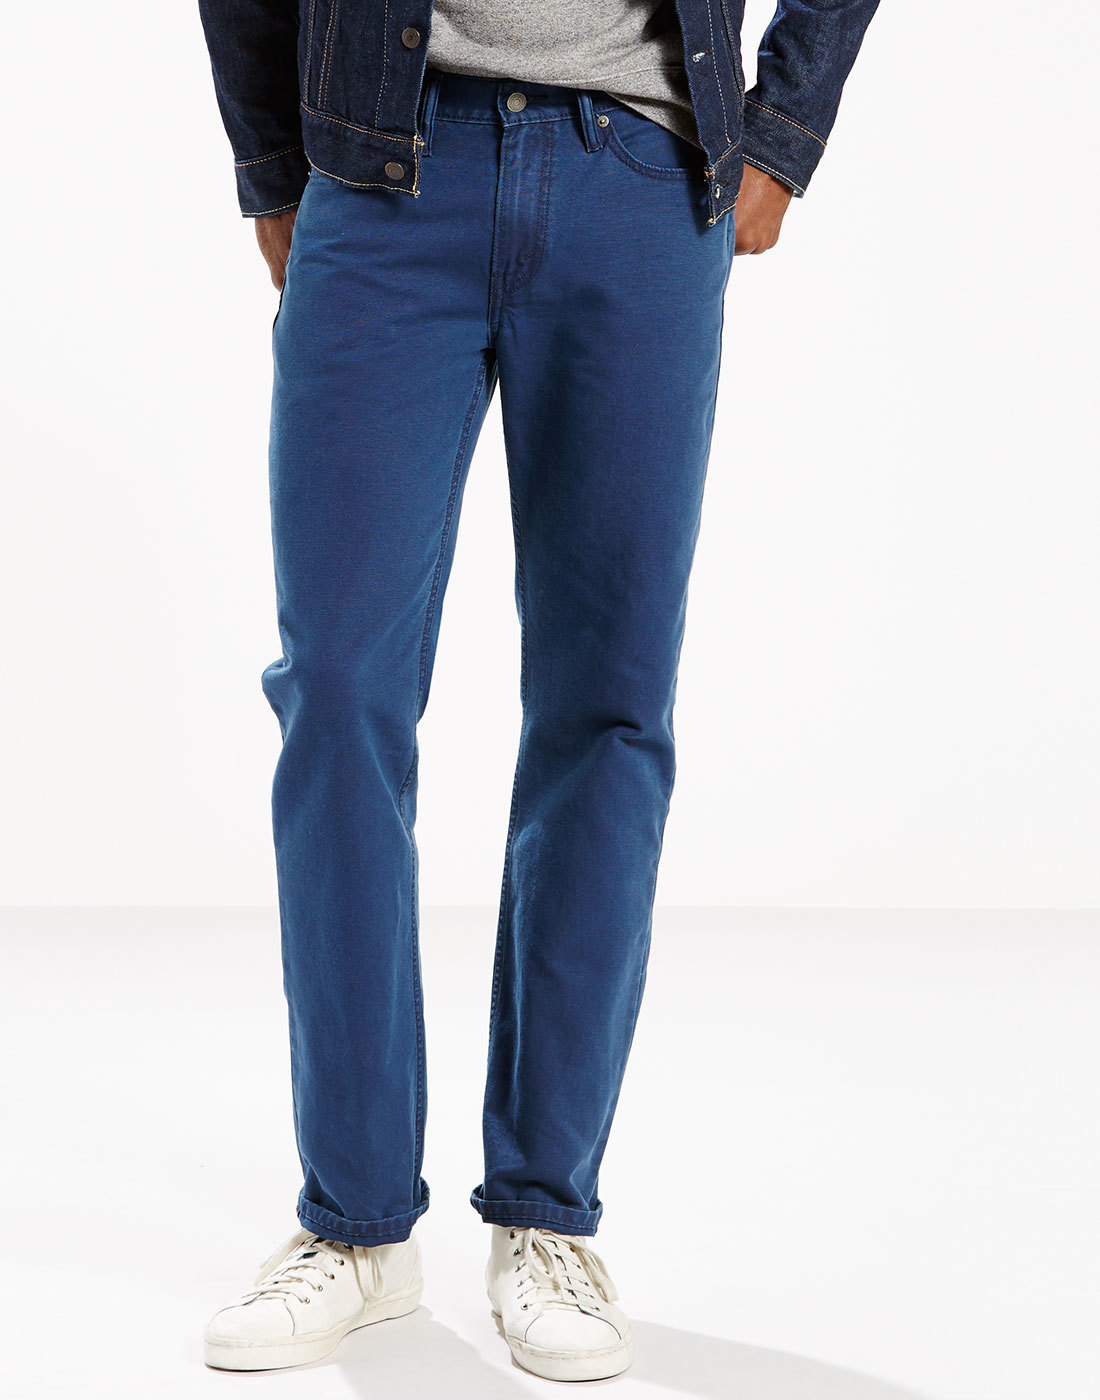 Levi's 514 Men's Jeans - Straight fit jeans